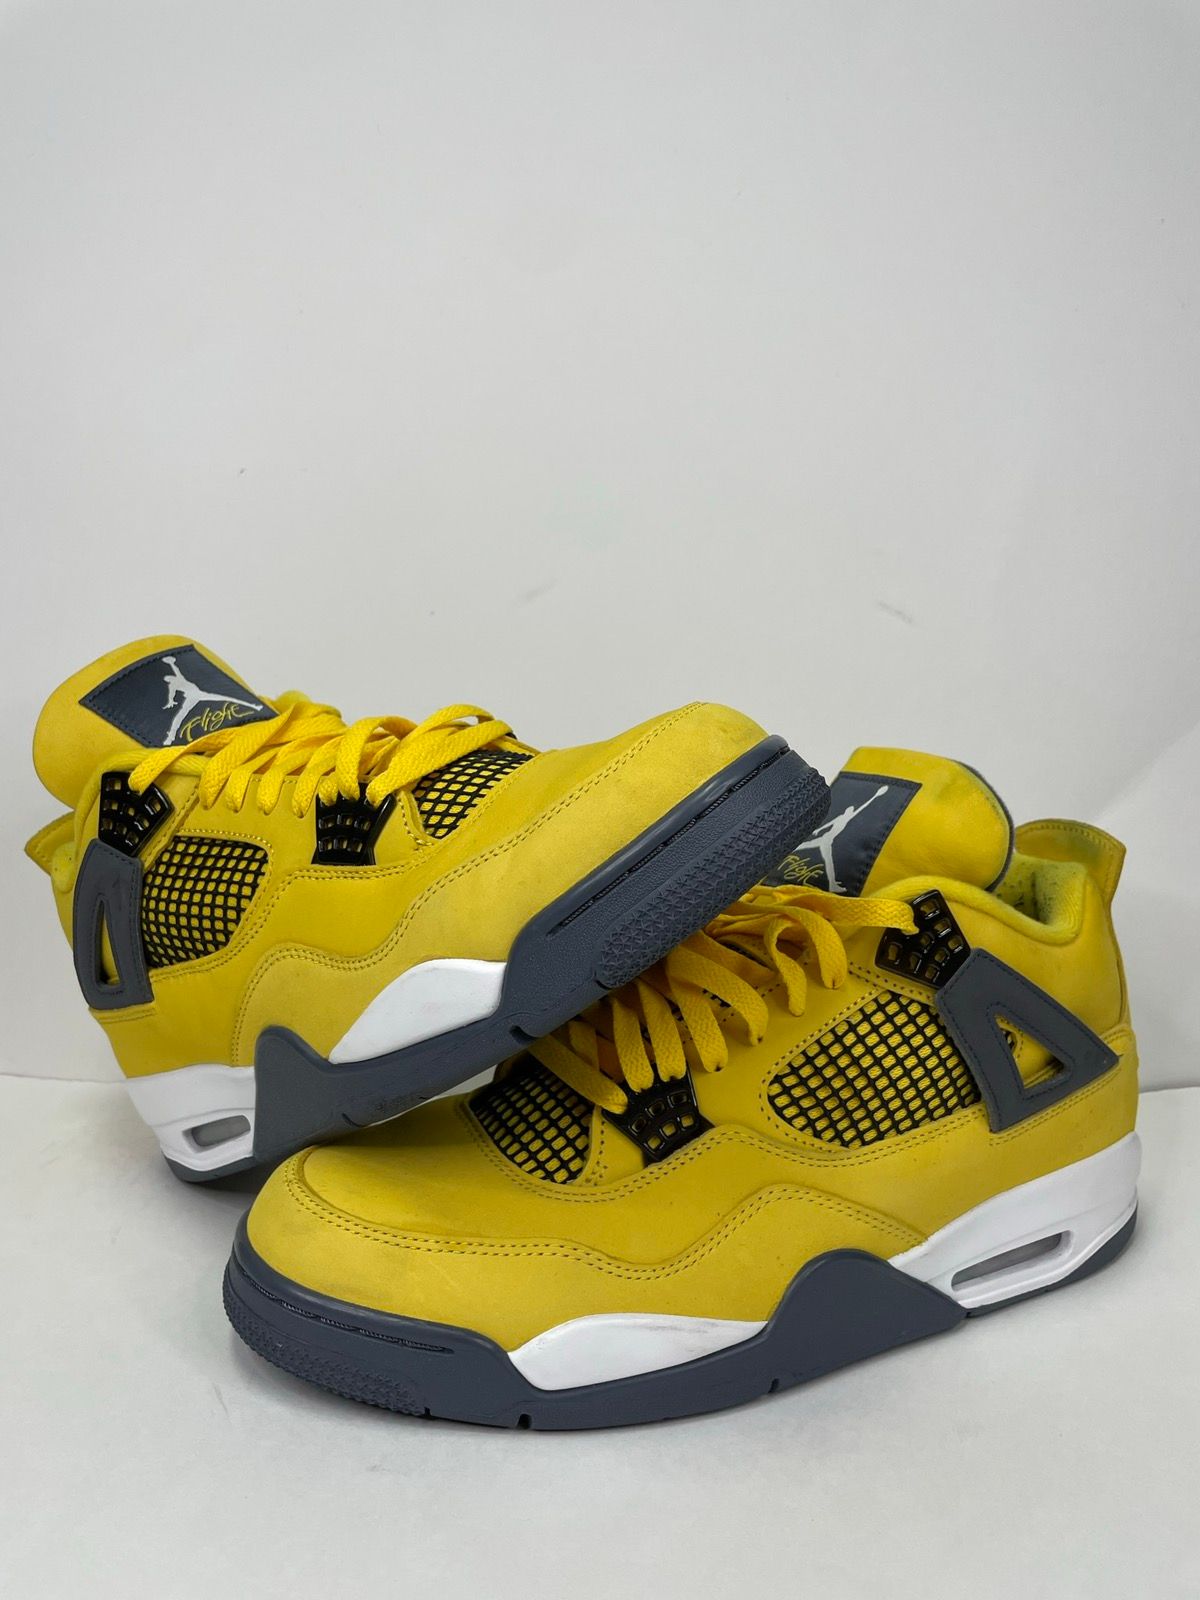 Pre-owned Jordan Brand Air Jordan 4 Retro Lightning Shoes In Yellow